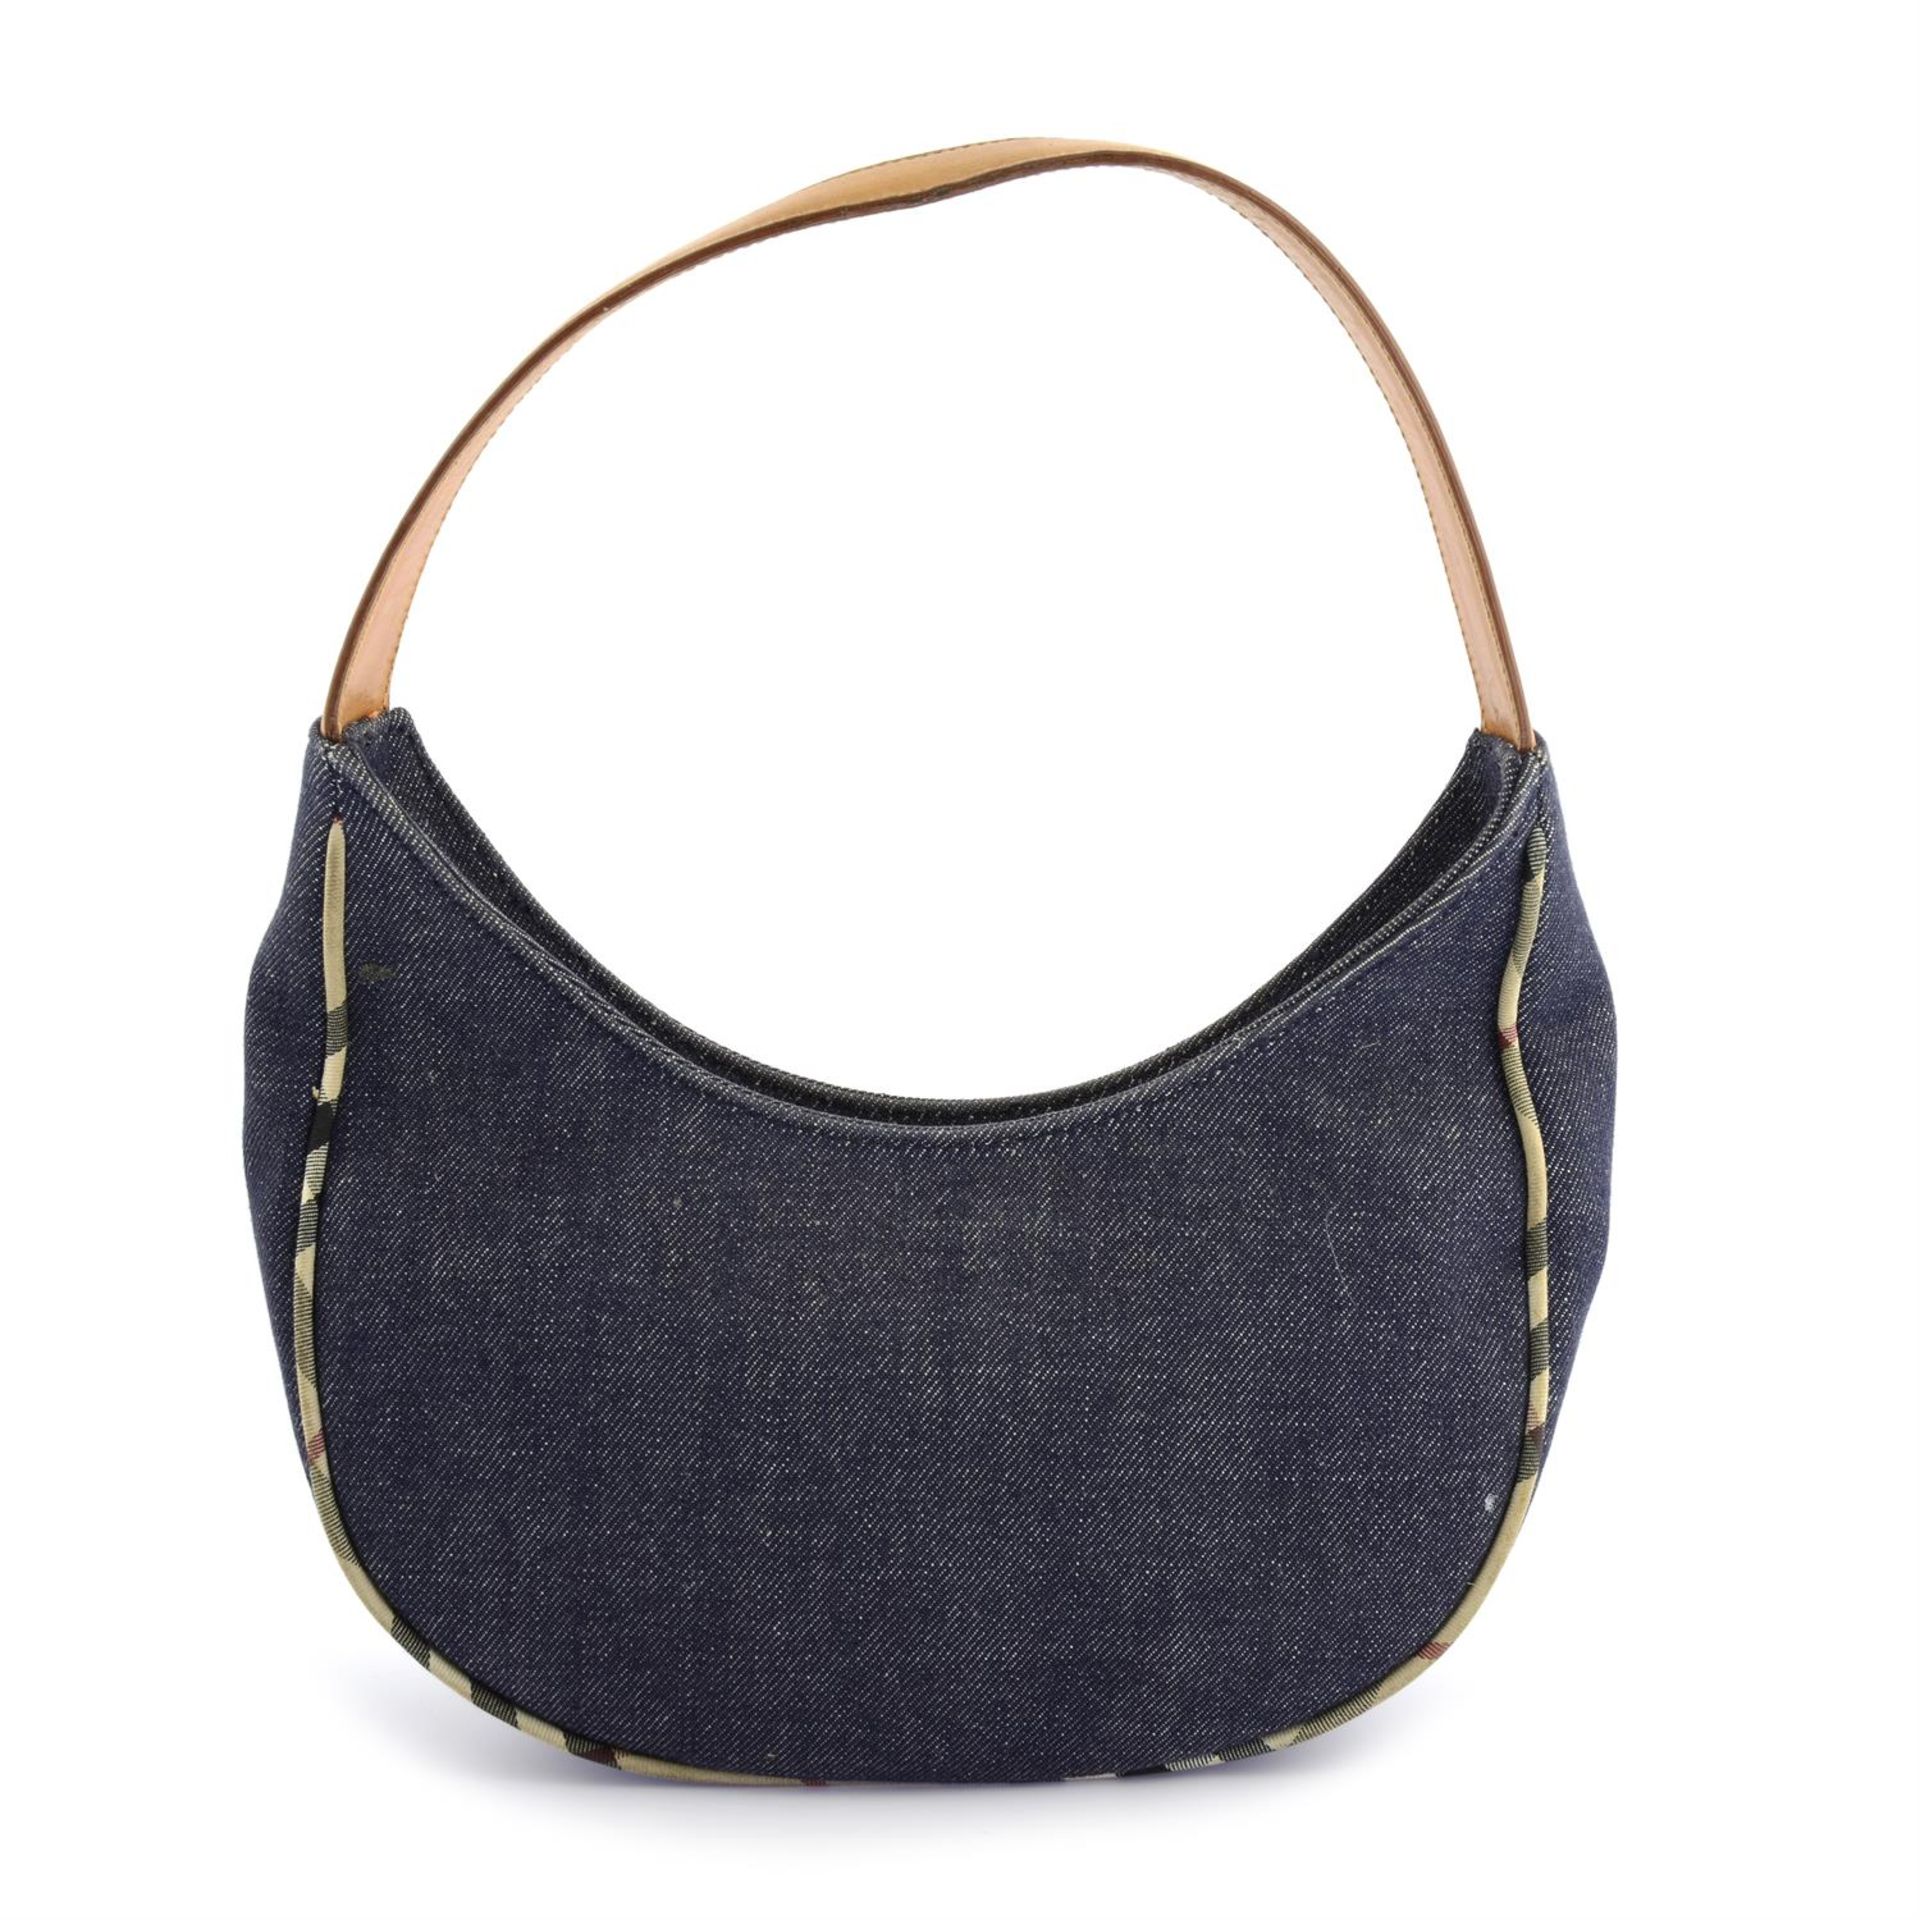 BURBERRY - a blue denim handbag.